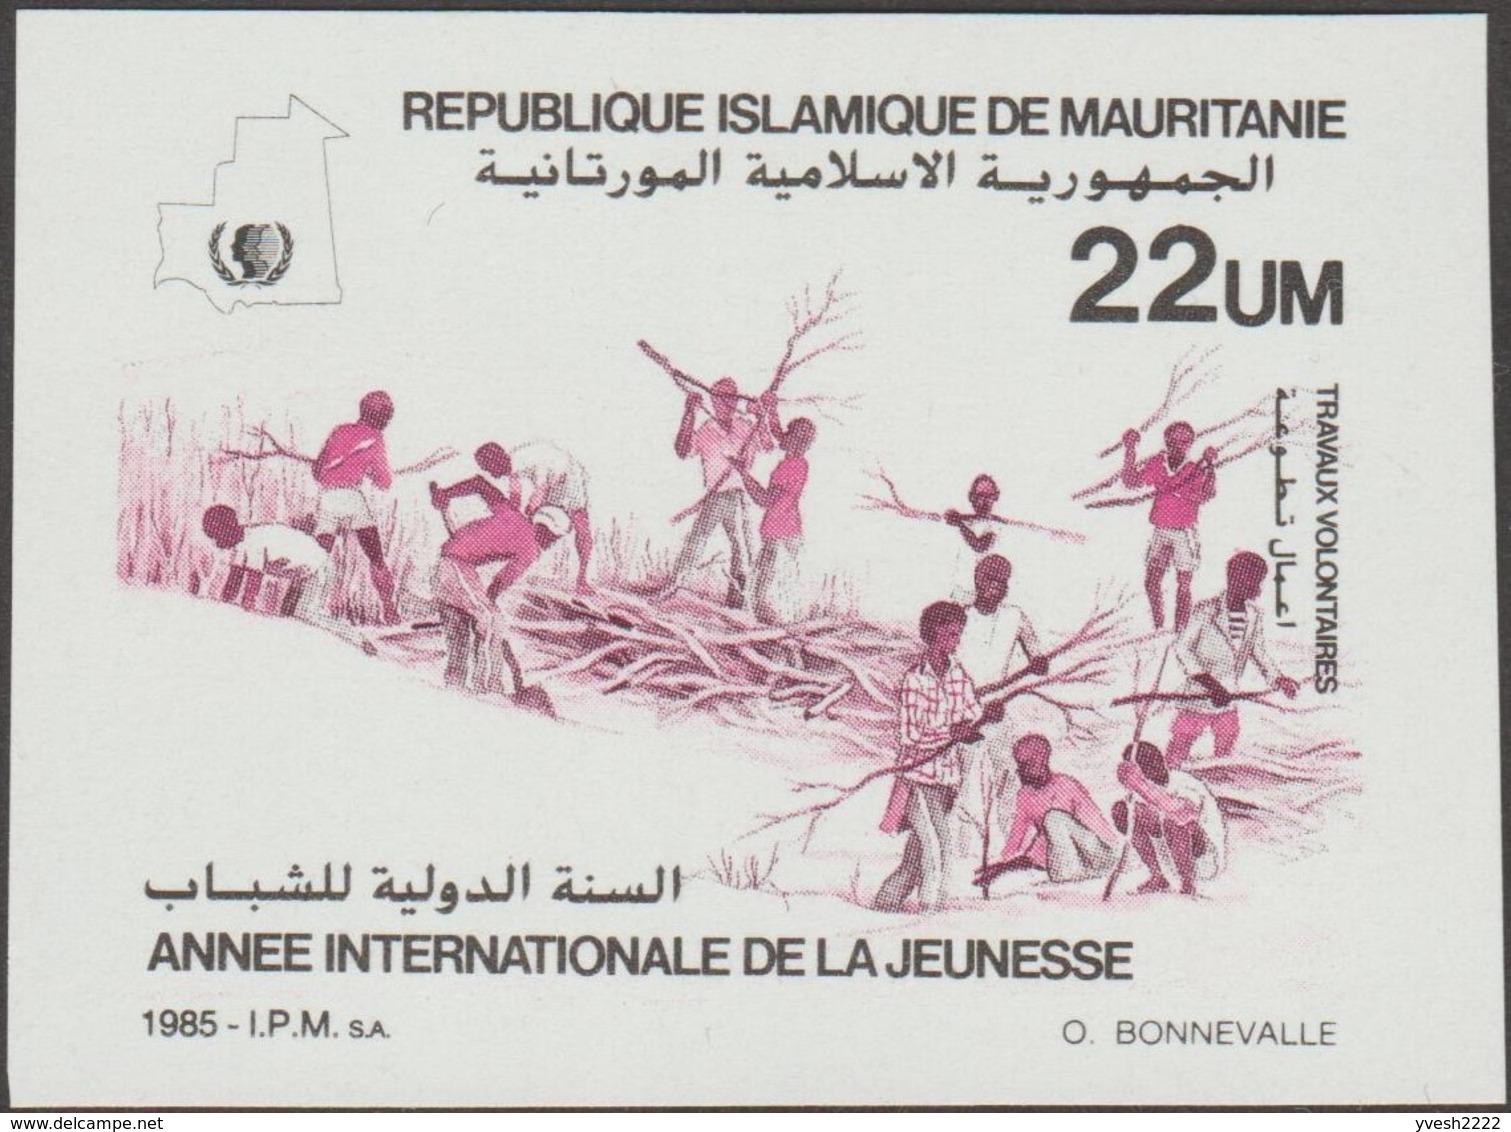 Mauritanie 1986 Y&T 572/4. Essais de couleurs. Année internationale de la Jeunesse, riz, développement, colombe, dune